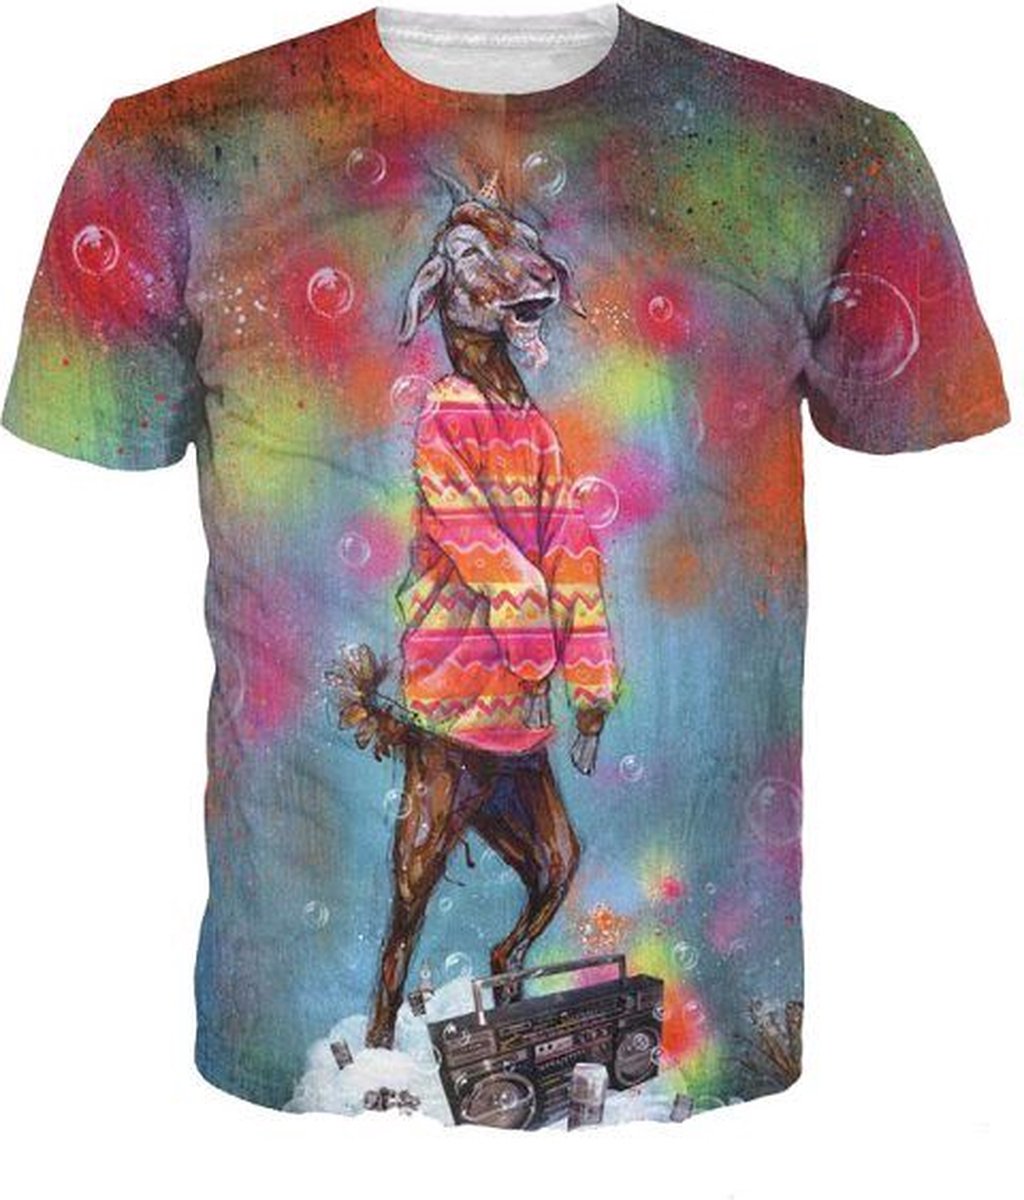 LSD Geit festivalshirt Maat M Crew neck - Festival shirt - Superfout - Fout T-shirt - Feestkleding - Festival outfit - Foute kleding - Geitenshirt - Psychedelisch shirt - Shirt voor foute party